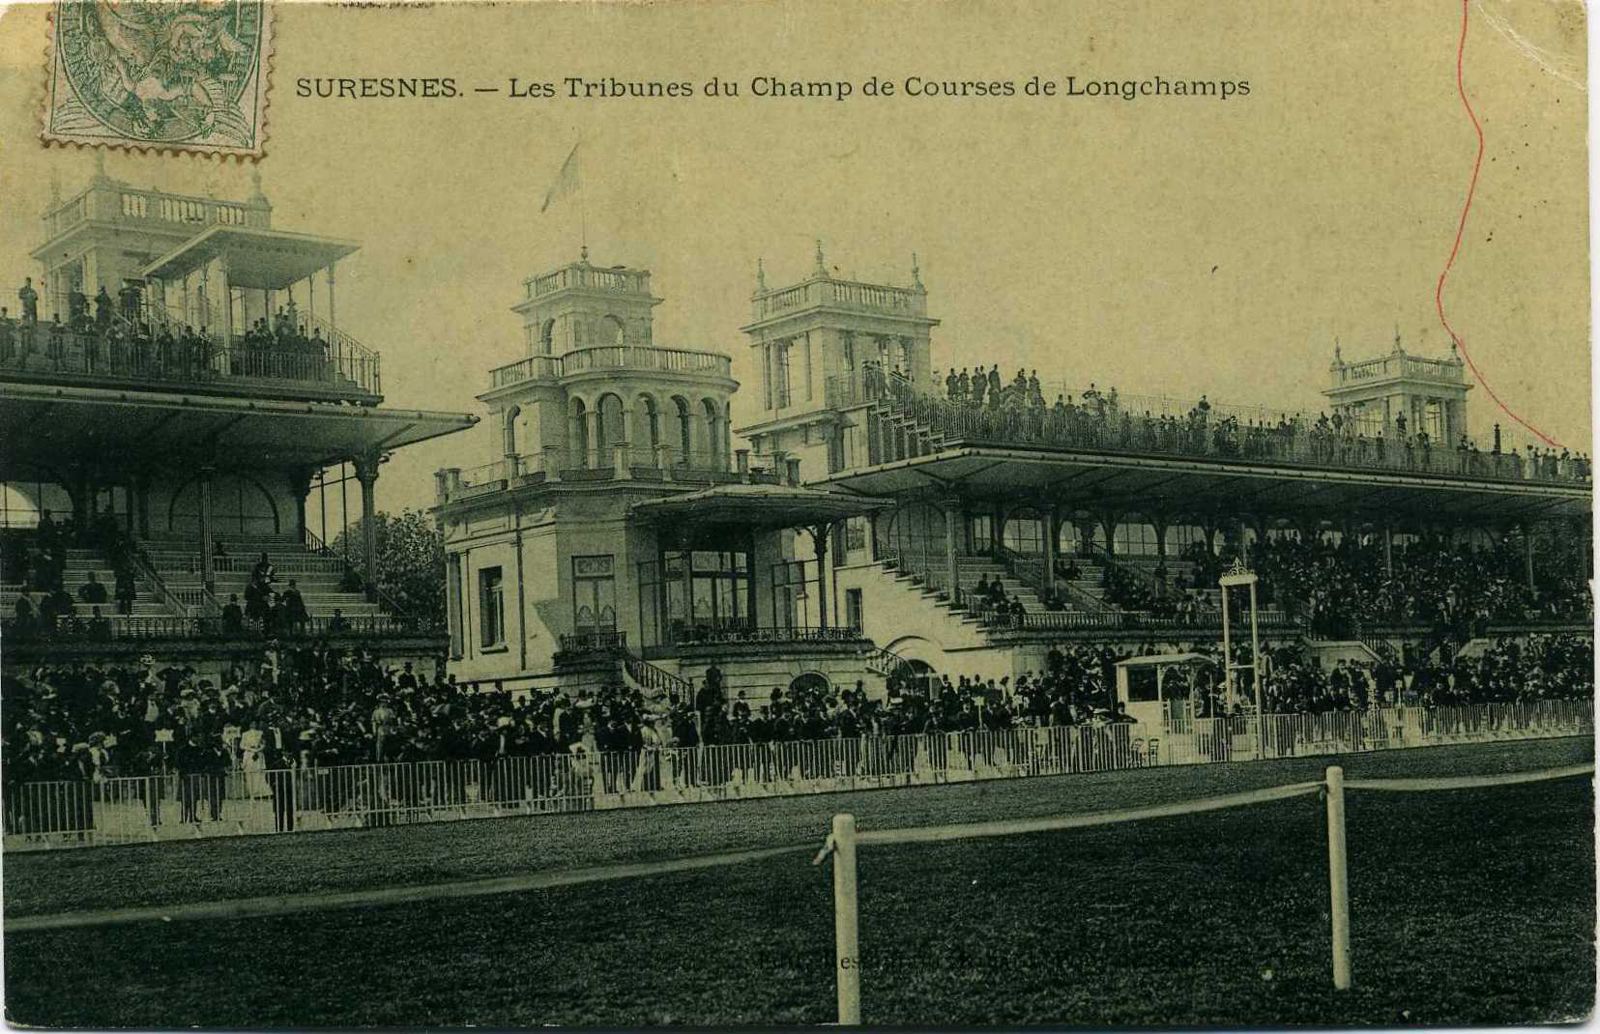 SURESNES - Les Tribunes du Champ de Courses de Longchamps